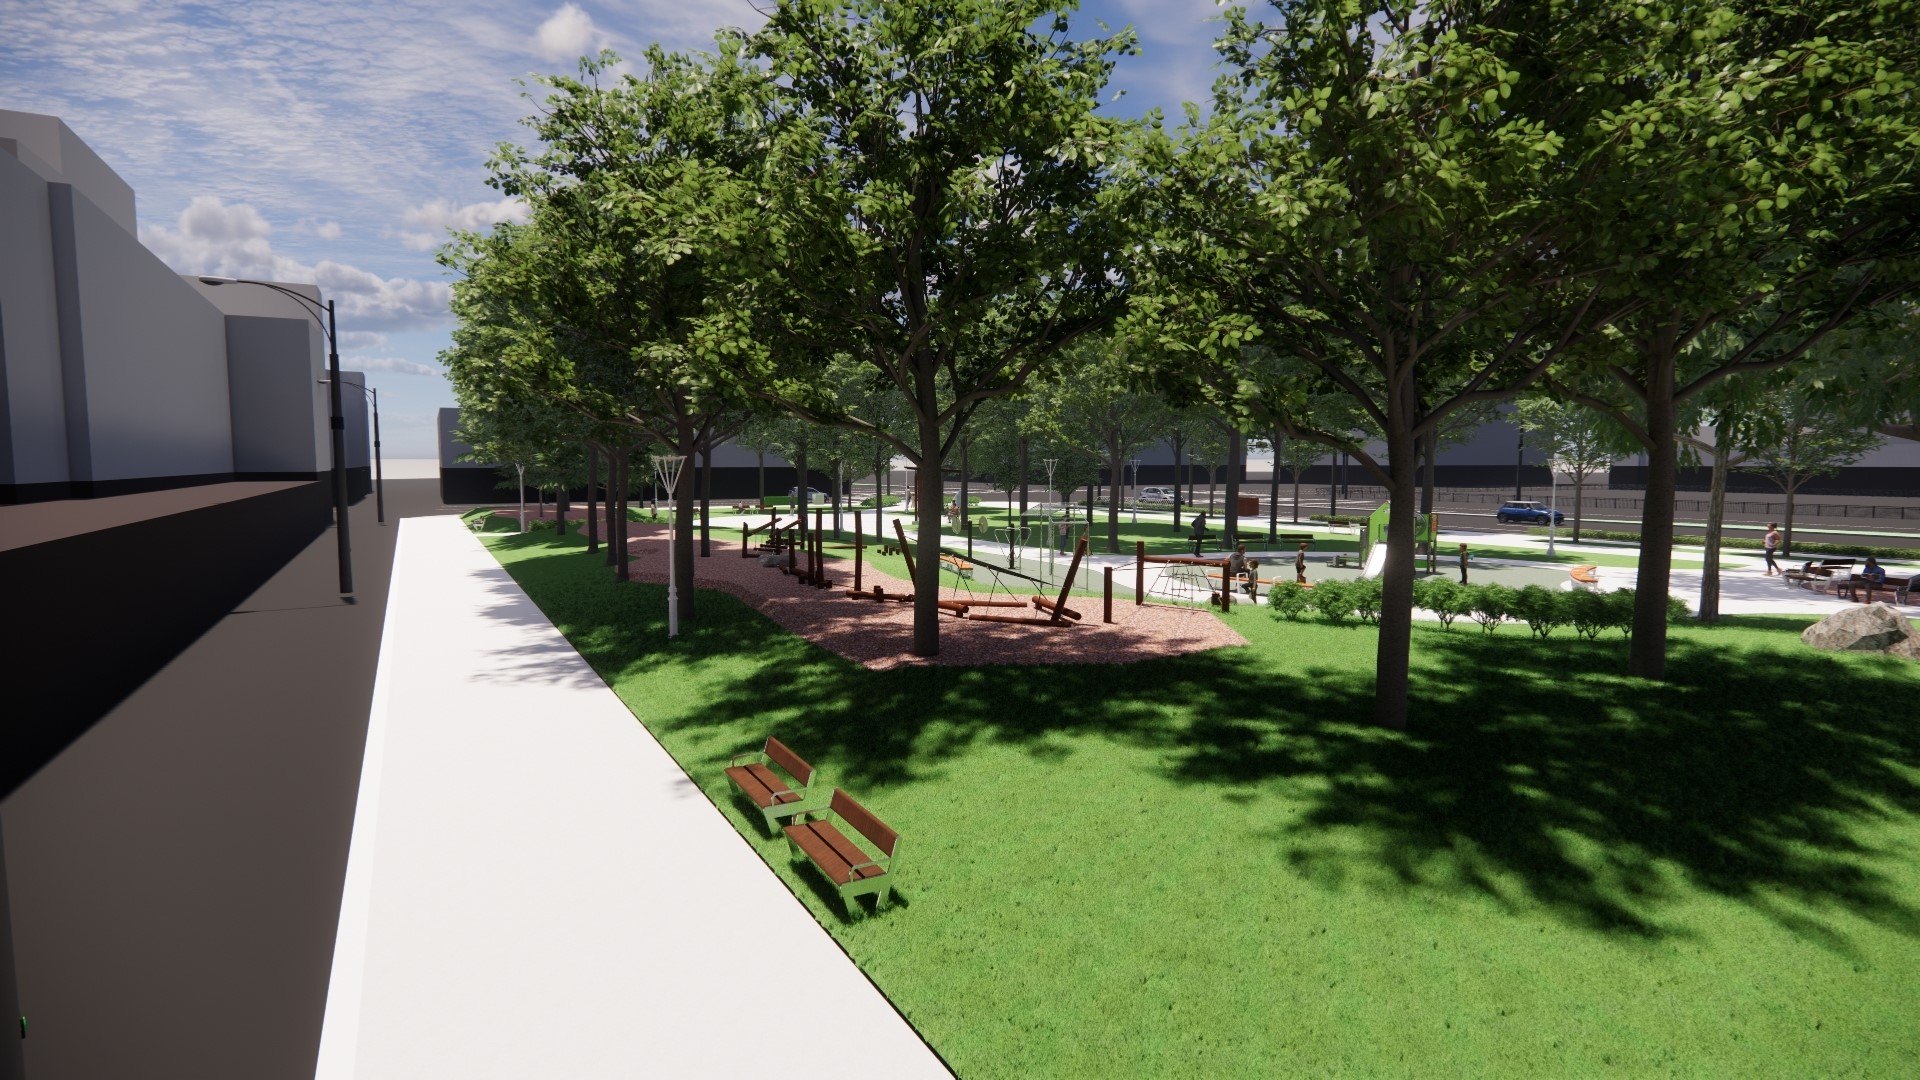 「共融式公園」規劃  打造優質之鄰里休憩空間